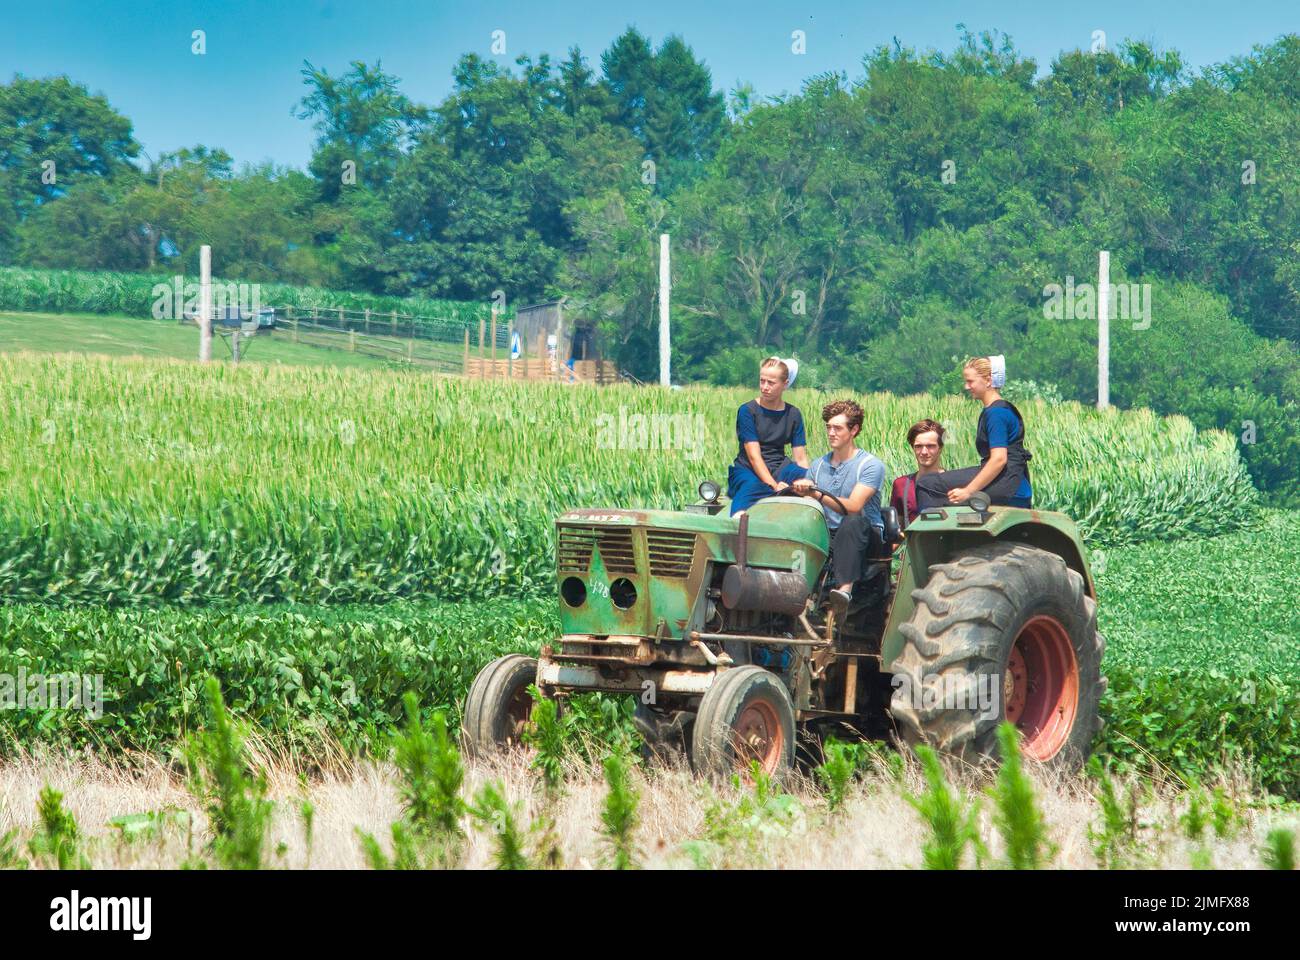 Jugendliche mit Amish Boy und Girl, die auf einem alten Traktor auf Ackerland reiten Stockfoto